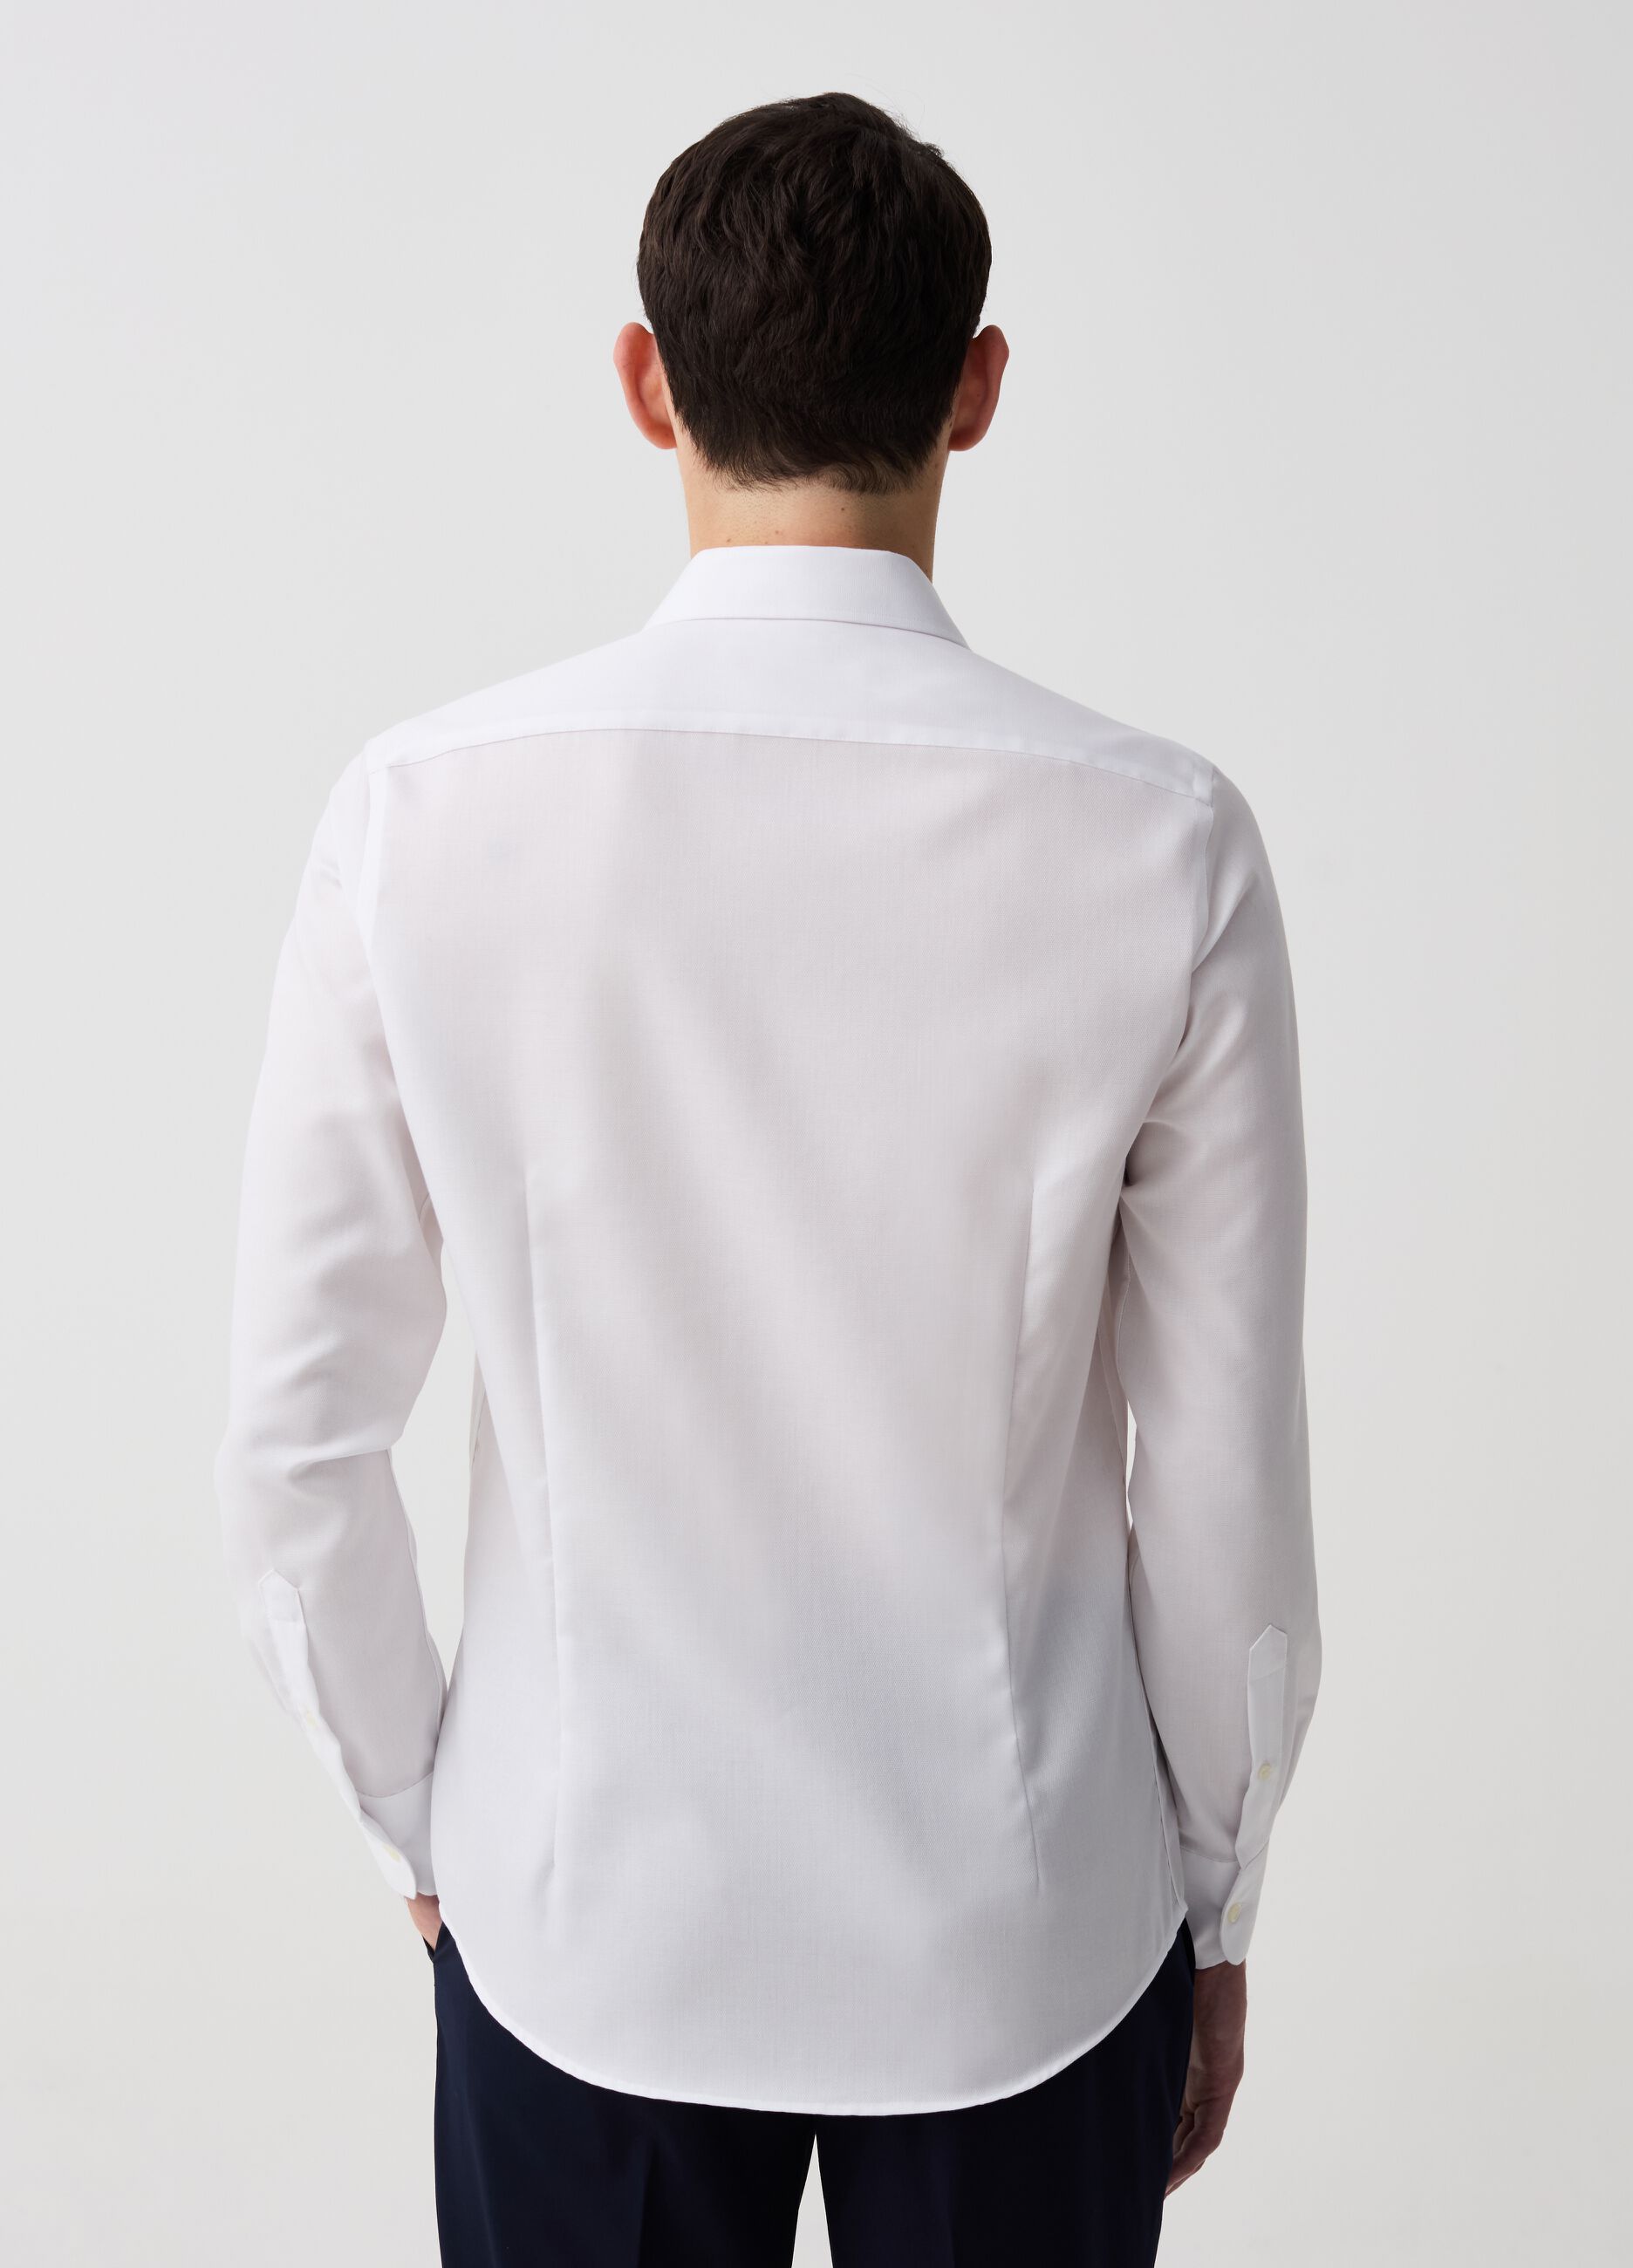 Camisa slim fit de algodón sin plancha